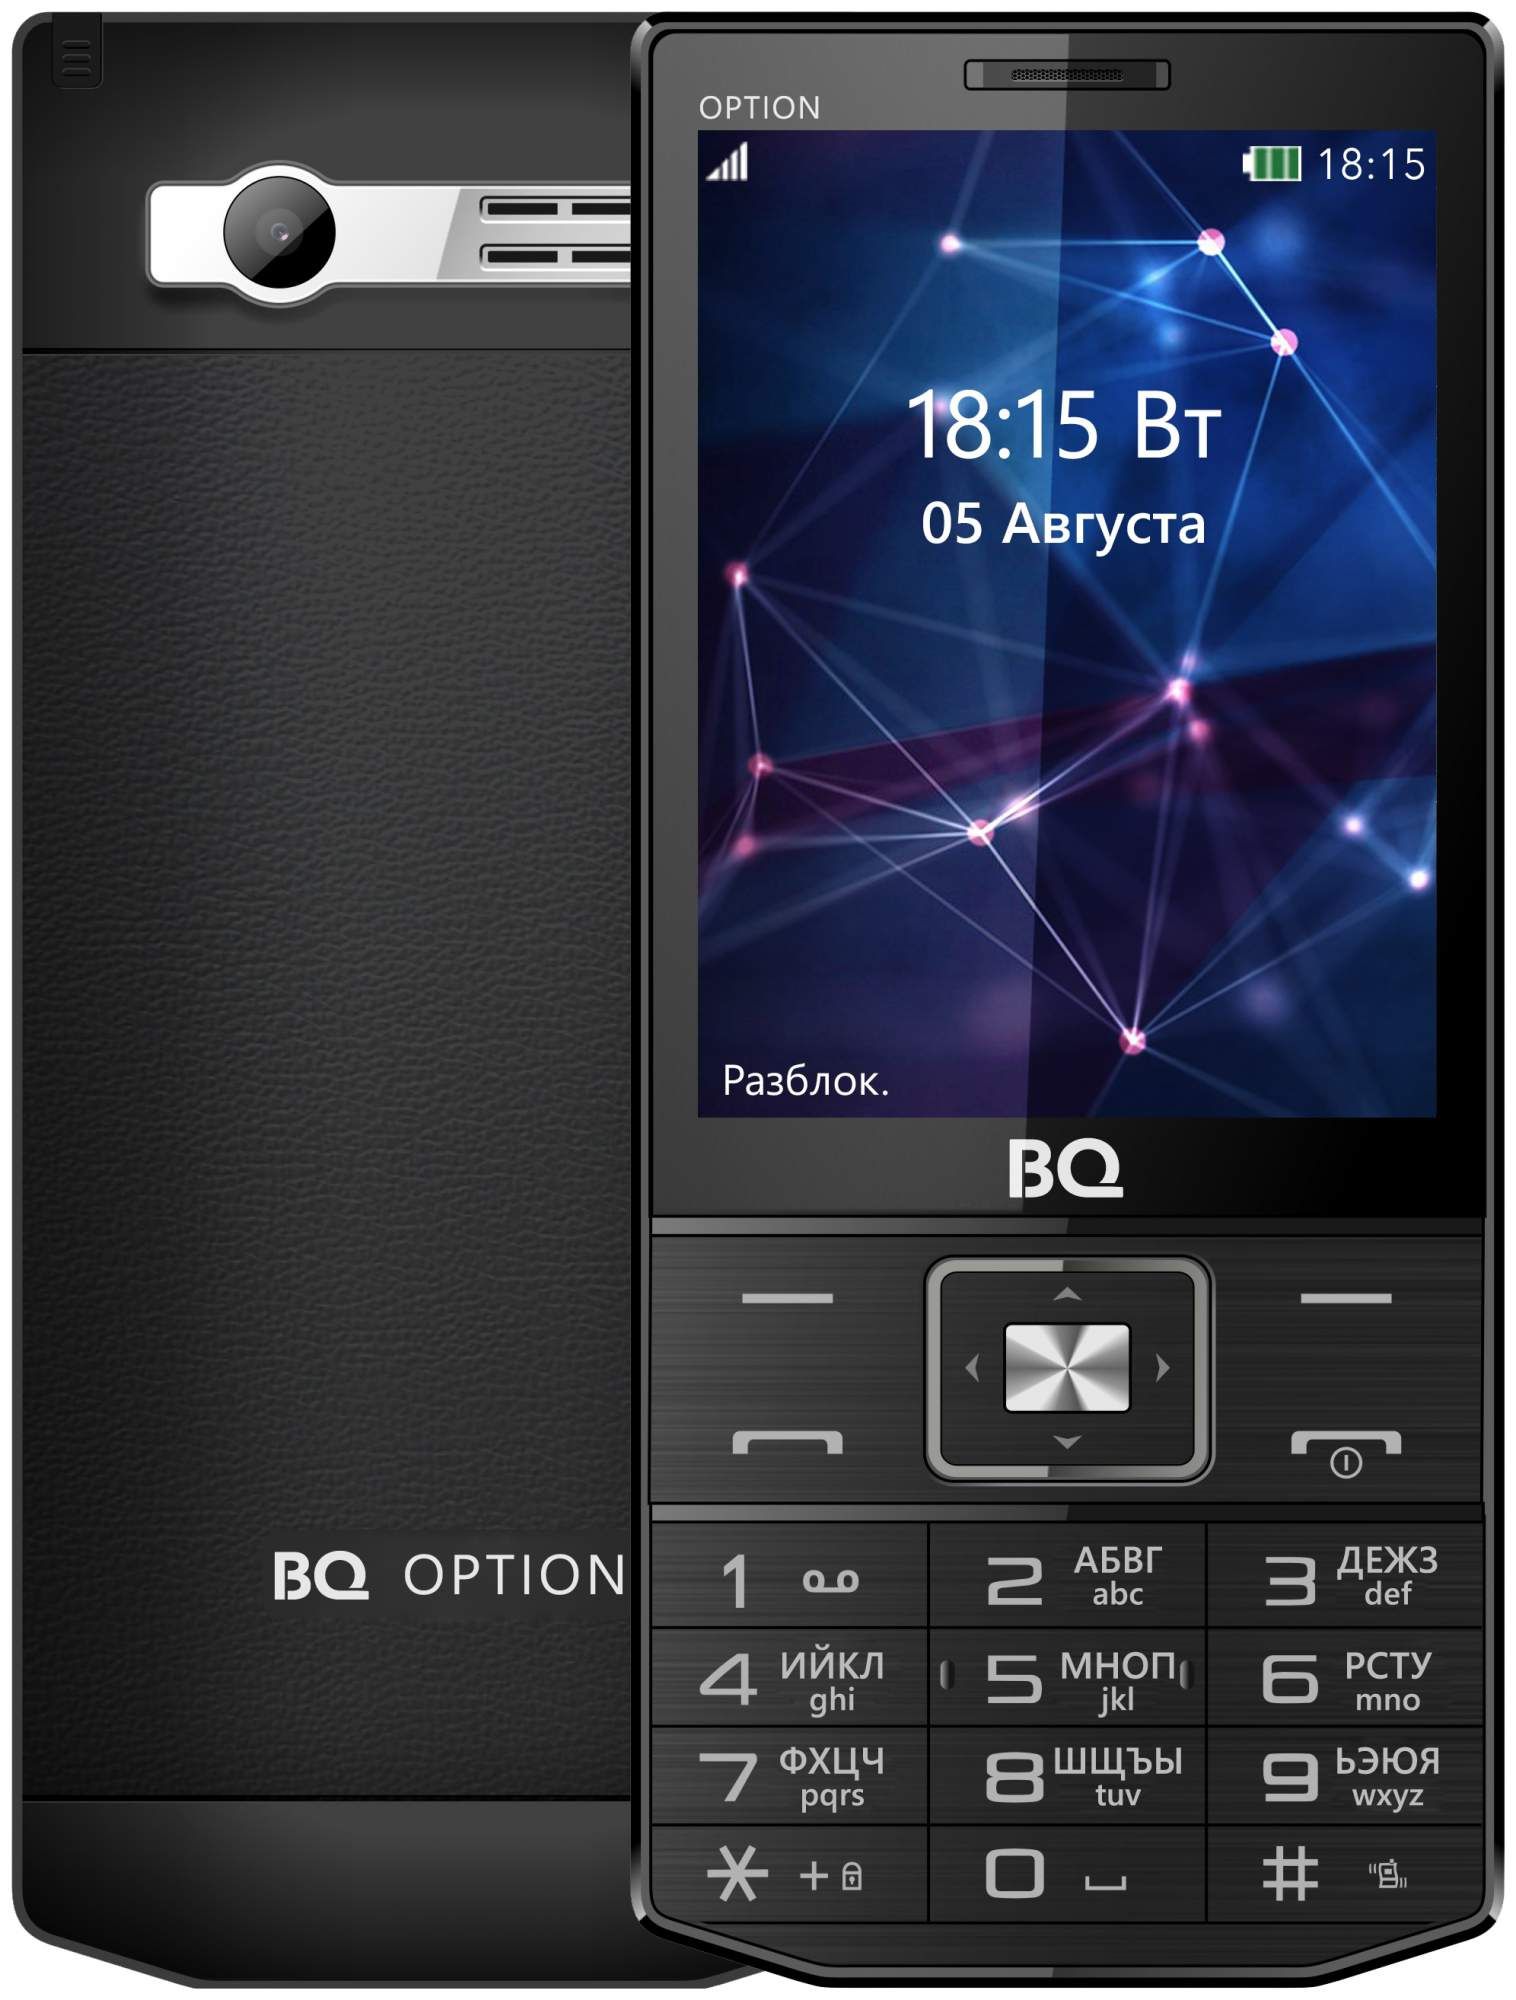 Bq телефоны телевизором. BQ-3201 option. BQ BQ-3201. BQ 3201. BQ Android кнопочный.